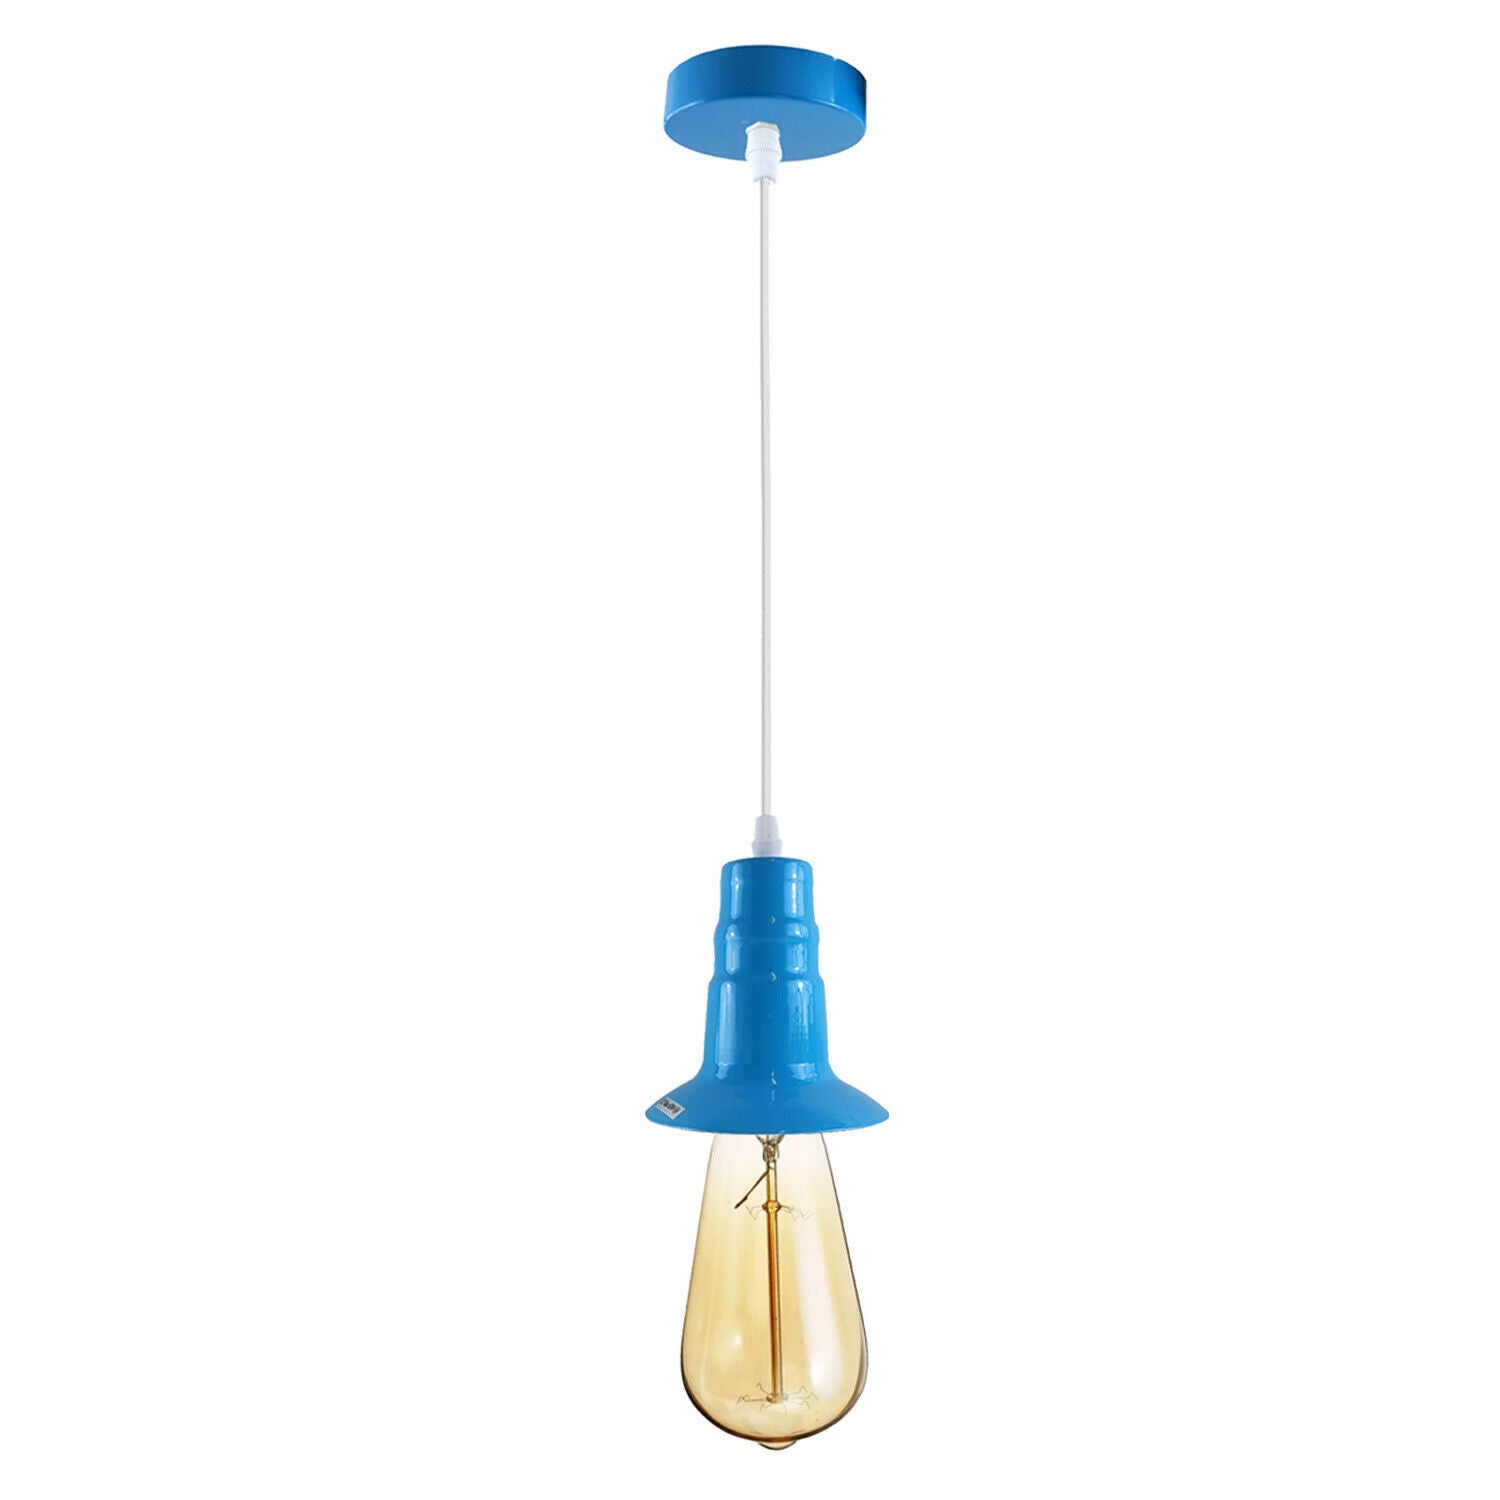 Light Blue Ceiling Light Fitting Industrial Pendant Lamp Bulb Holder~1681 - electricalsone UK Ltd